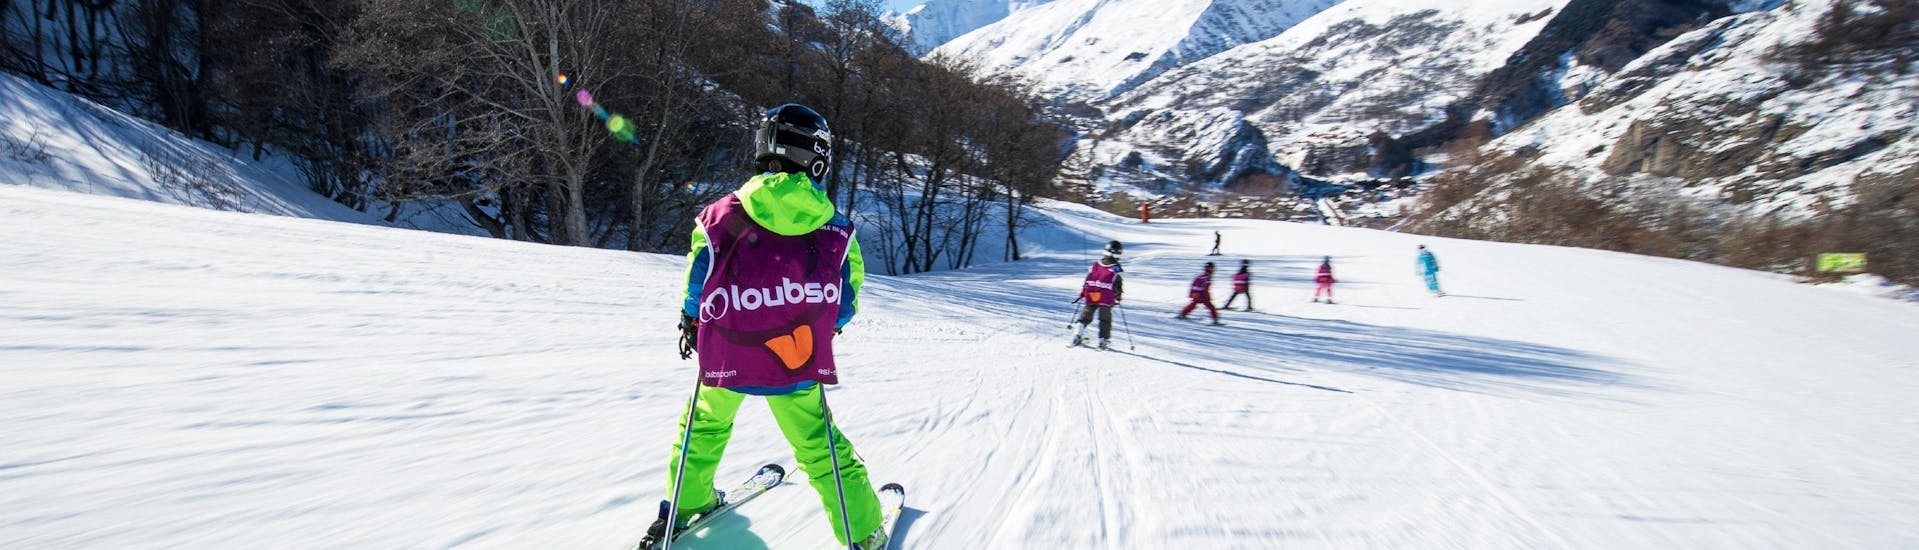 Les enfants descendent une piste pendant leur Cours de ski Enfants (5-13 ans) pour Tous niveaux avec l'école de ski ESI Ski Family à Val Thorens.